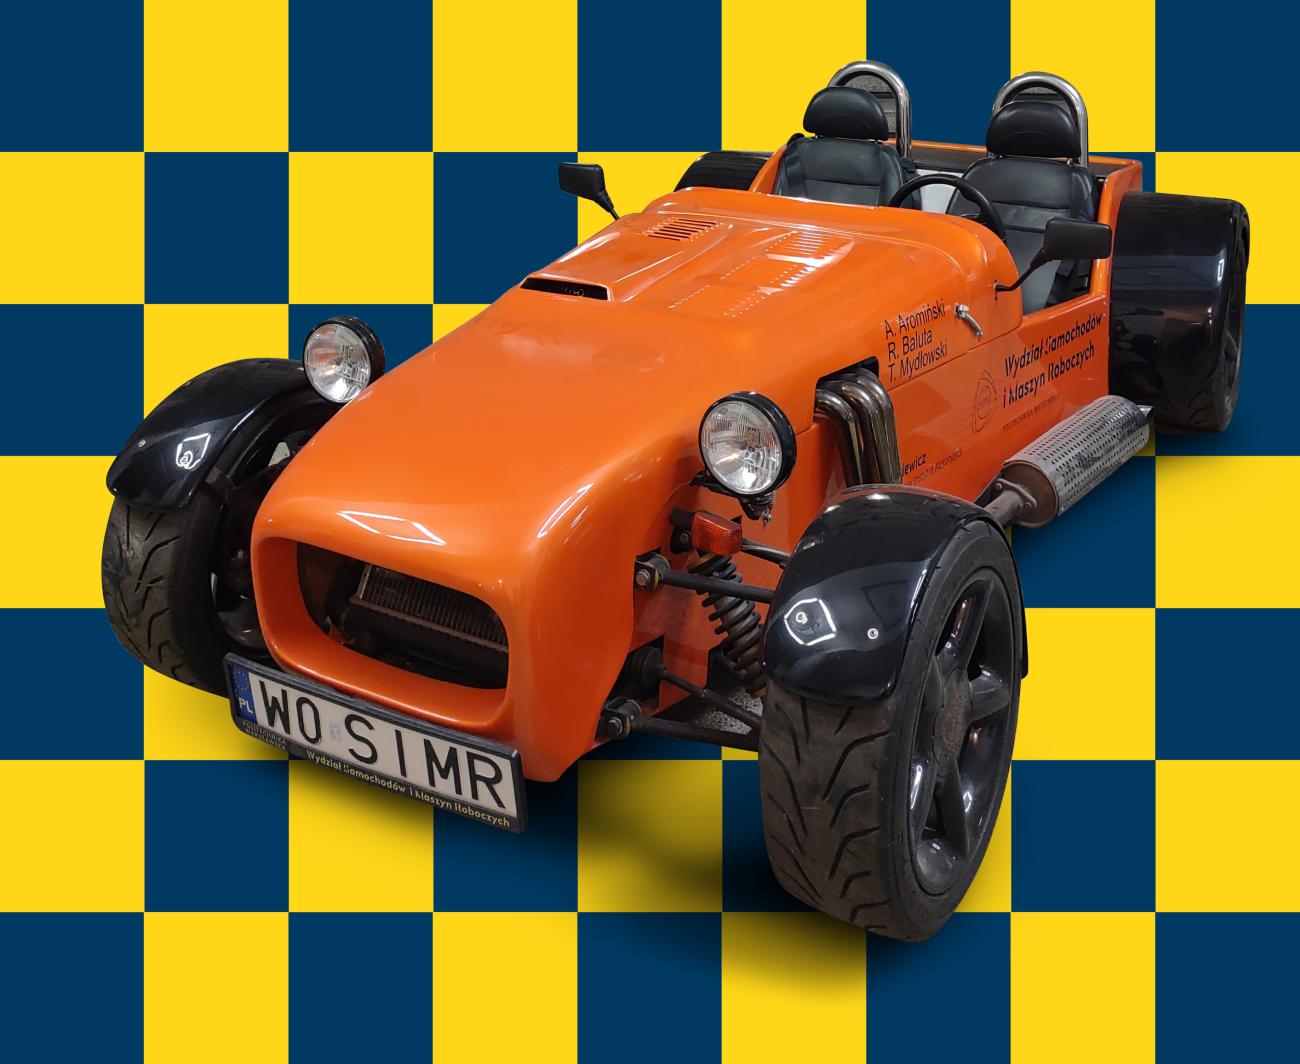 Pomarańczowy samochód sportowy w stylu retro na tle żółto-niebieskiej szachownicy